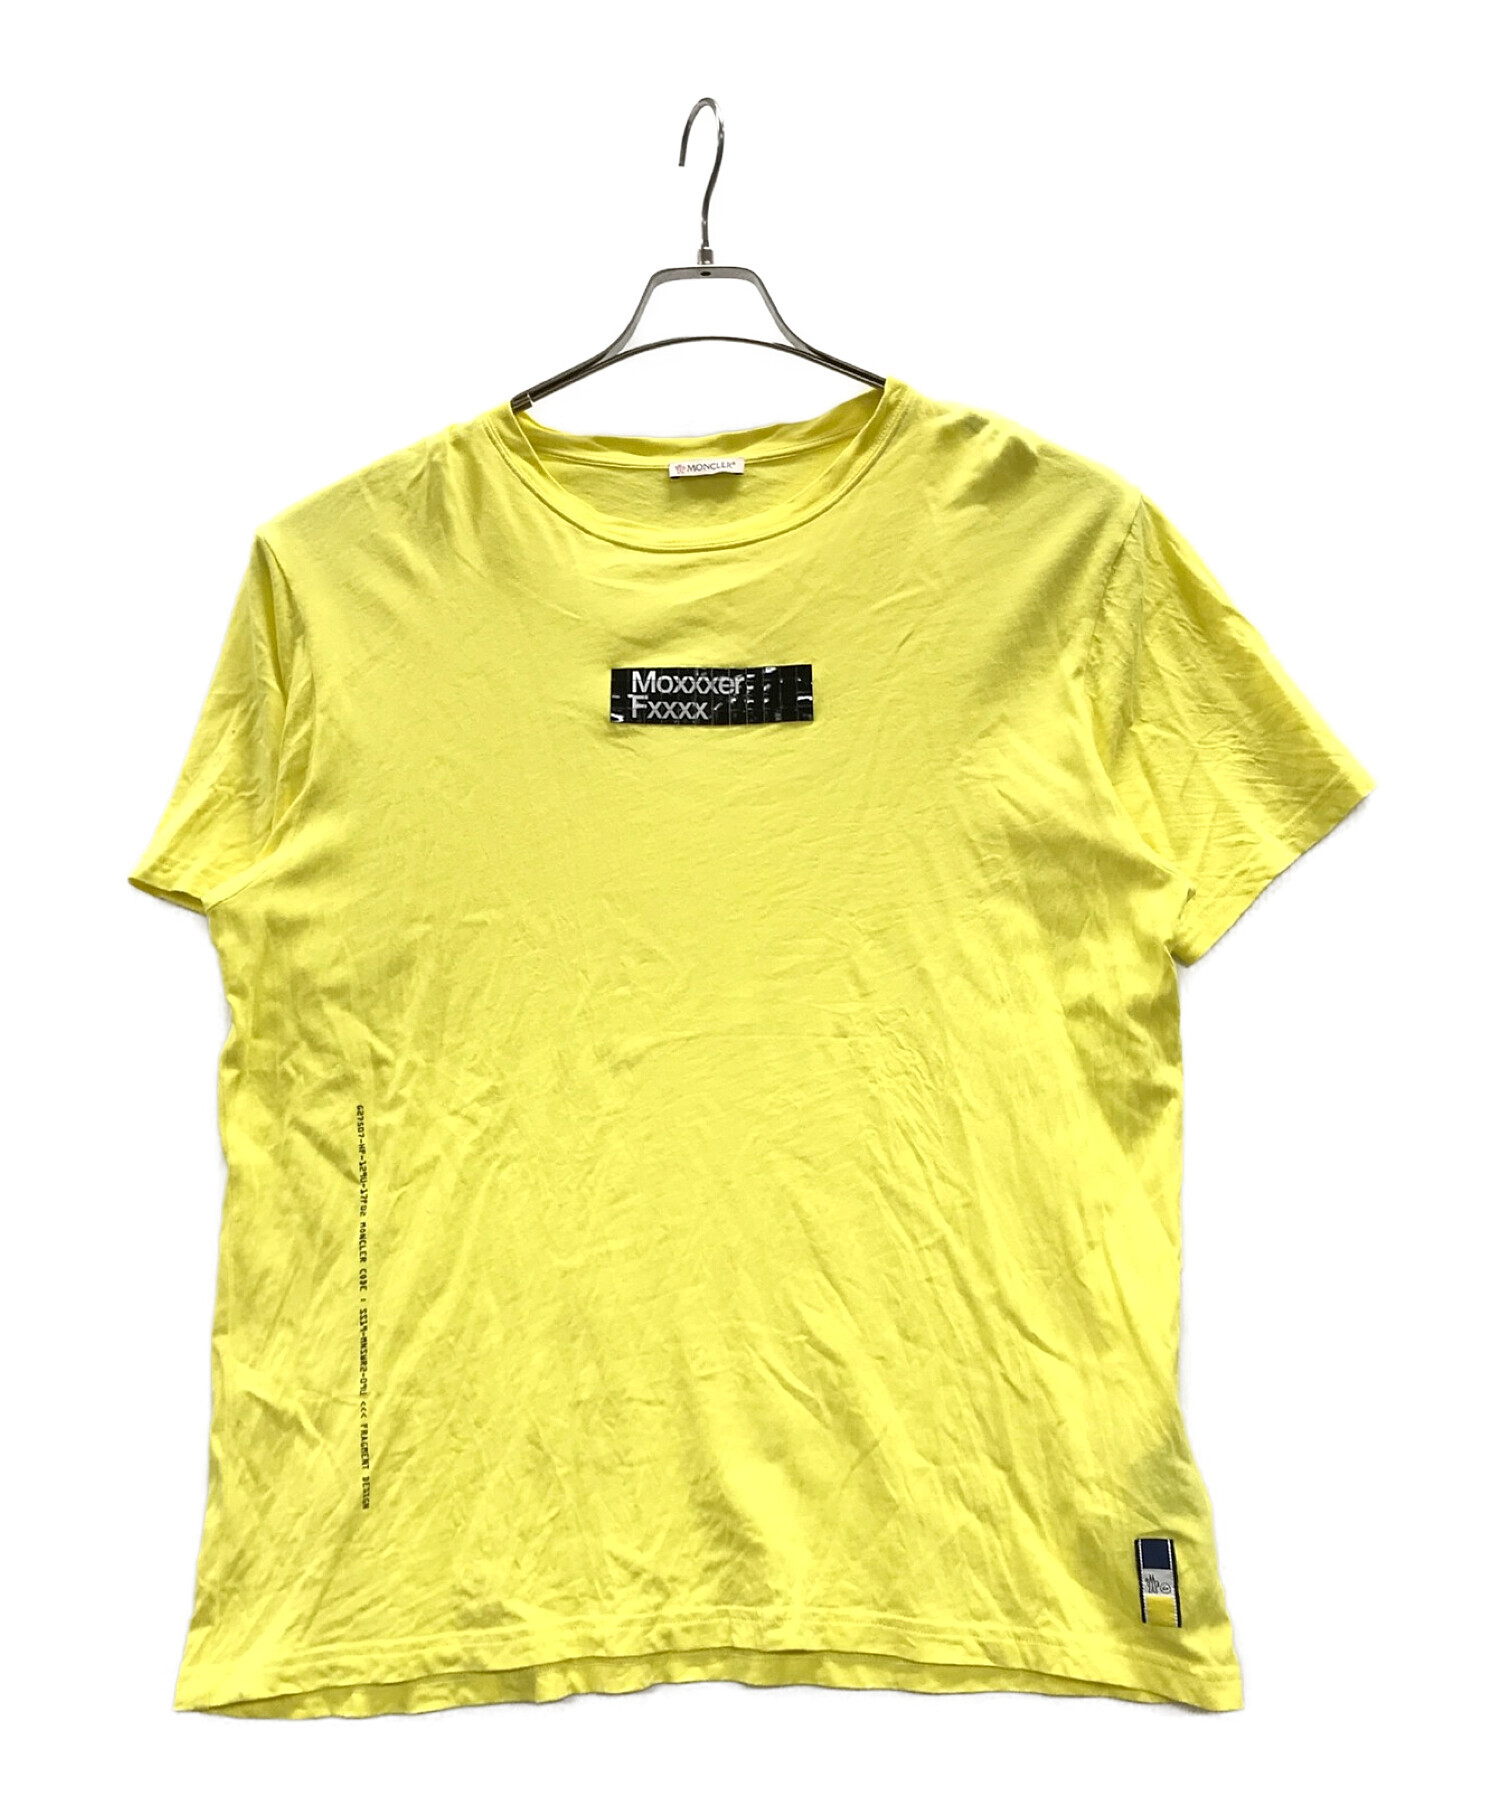 MONCLER (モンクレール) FRAGMENT DESIGN (フラグメント デザイン) Tシャツ　FRAGMENT DESIGN イエロー  サイズ:L